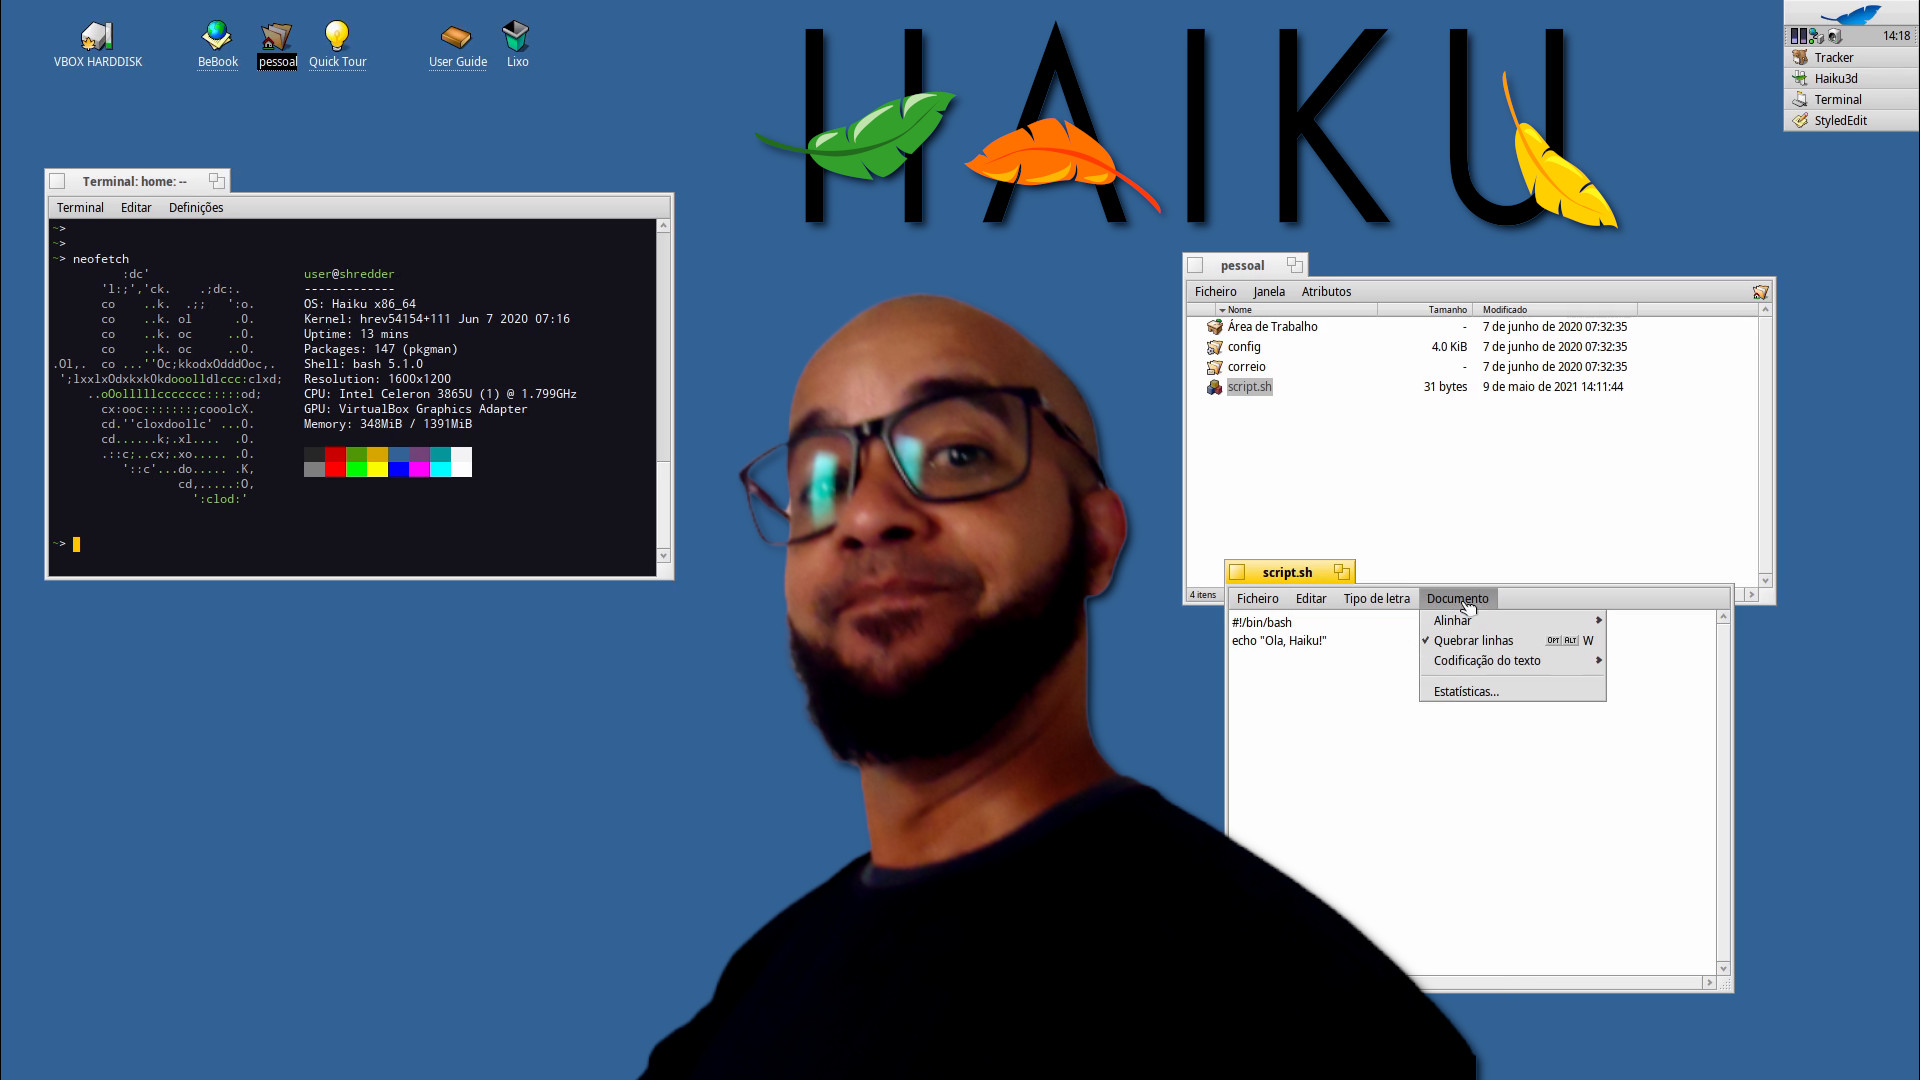 Meet Haiku, an Operating System written in C++